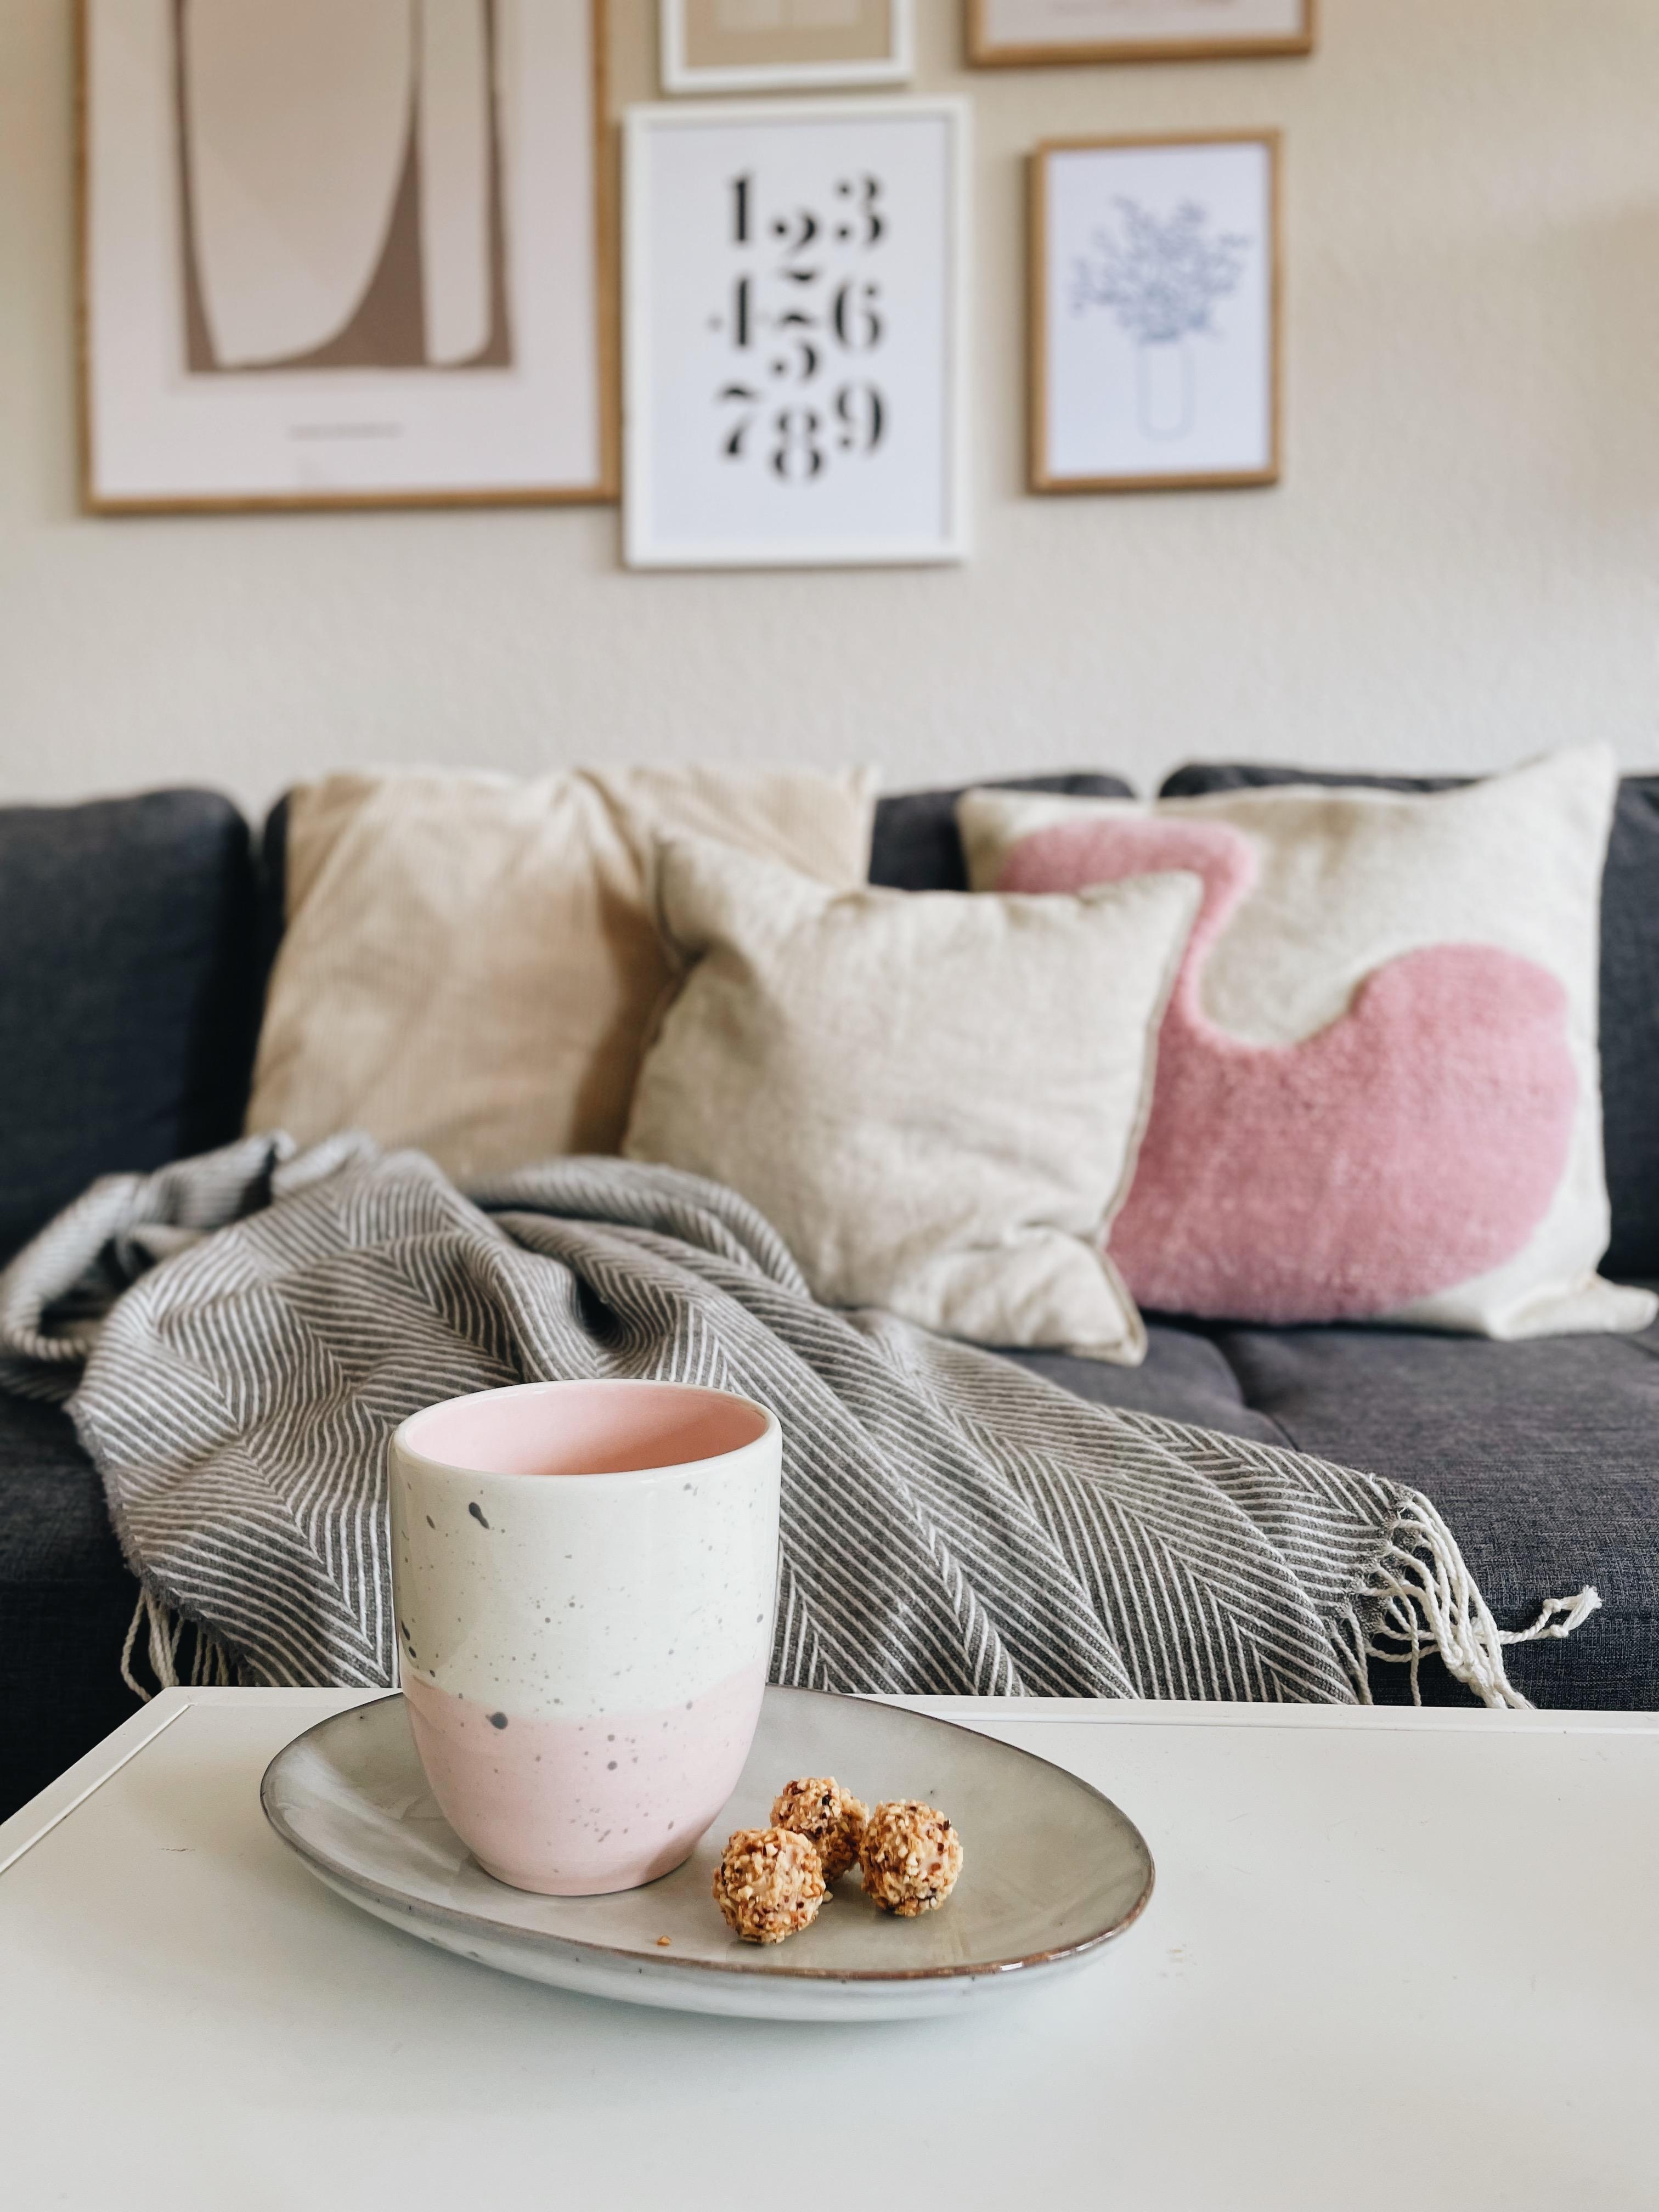 🤍 #sonntag #wohnzimmer #kaffee #hygge #couchliebt #inspiration 